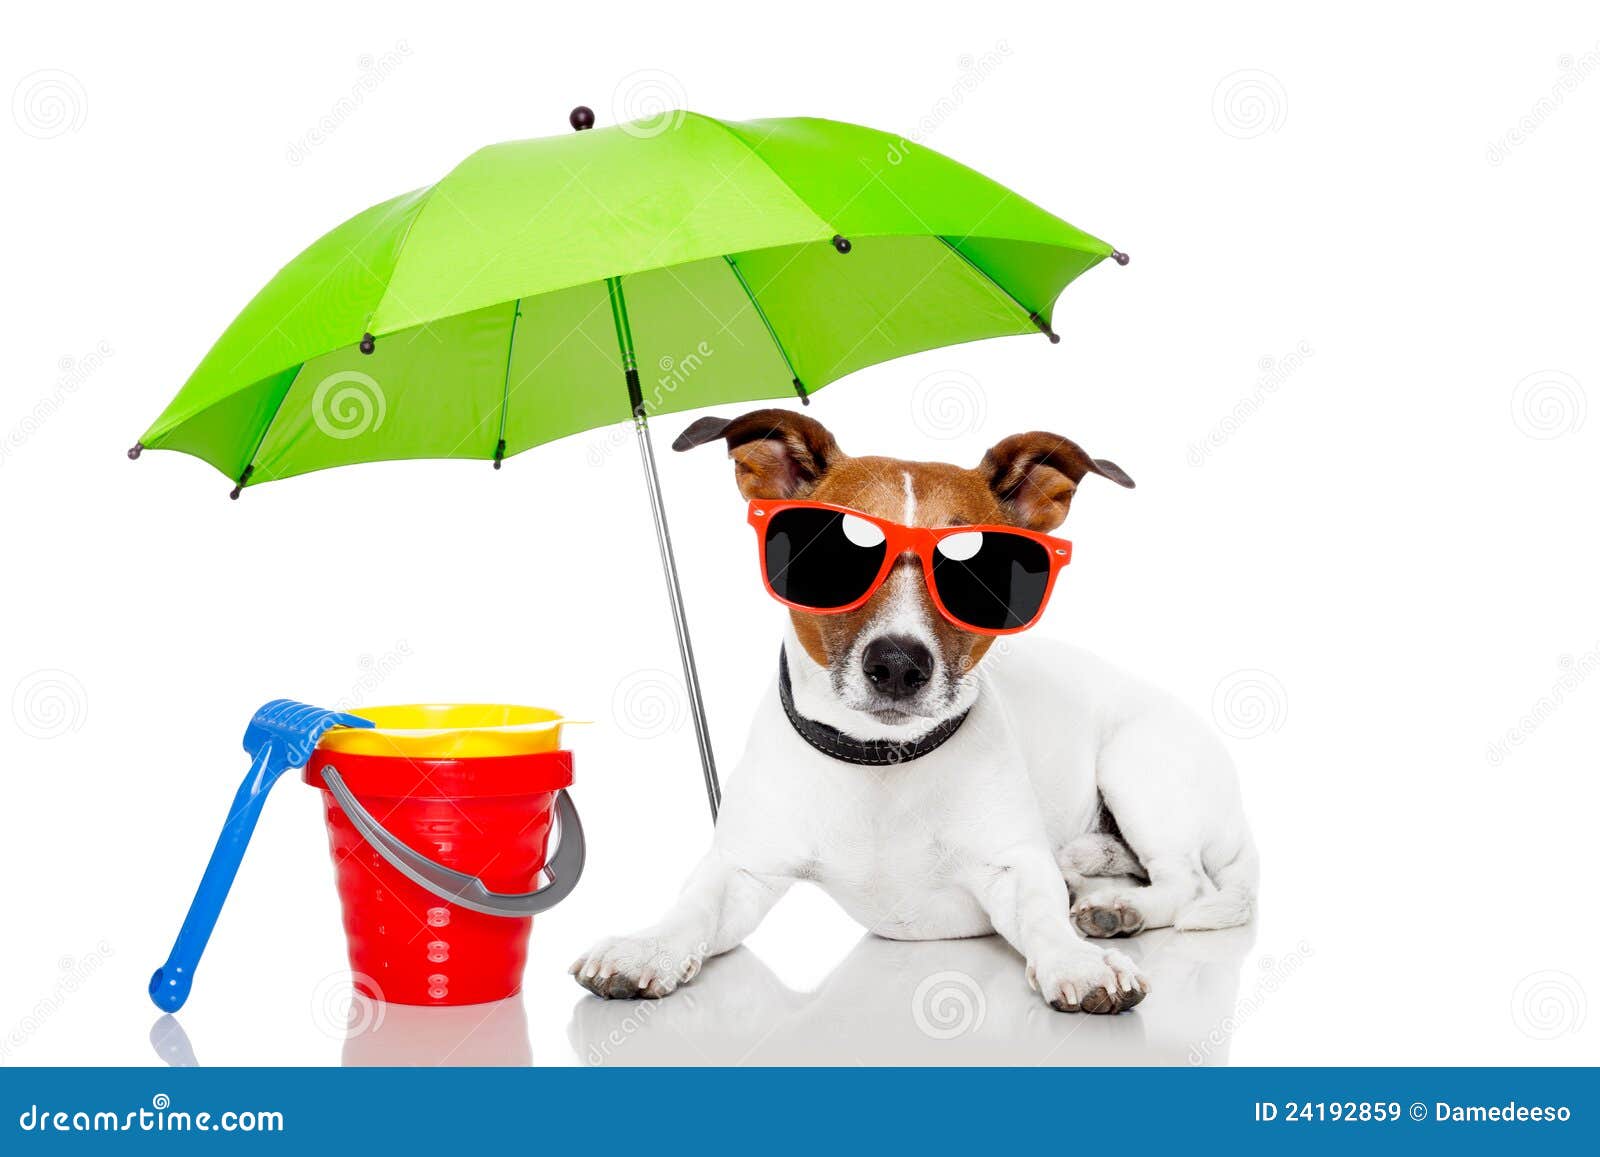 dog sunbathing with umbrella